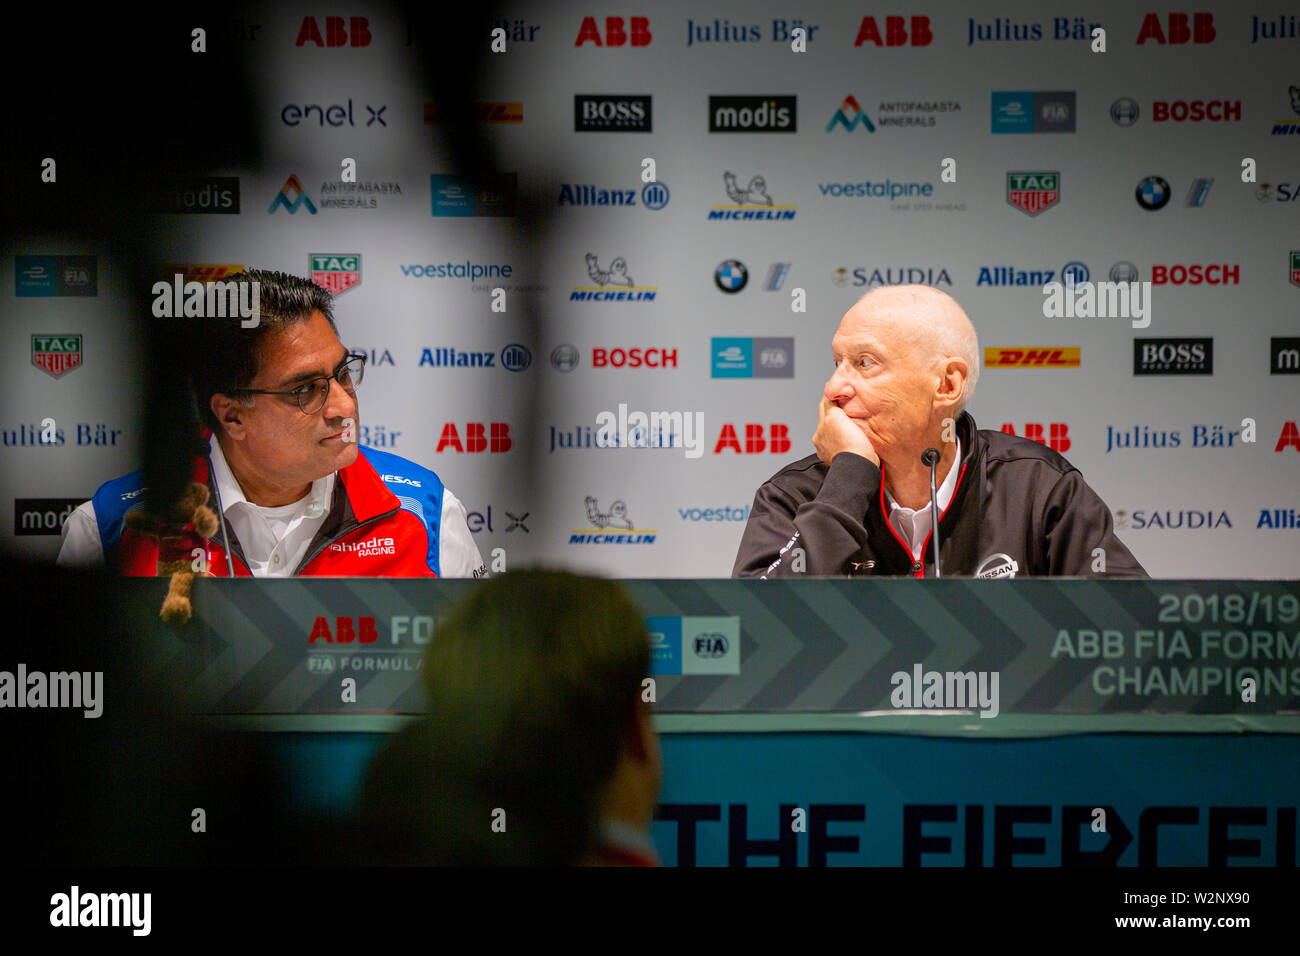 Mahindra Racing Team Manager Dilbagh Gill und Nissan e. dams Team Manager Jean-paul Driot auf einer Pressekonferenz im Vorfeld der ABB FIA Formel E Rennen in Bern. Stockfoto